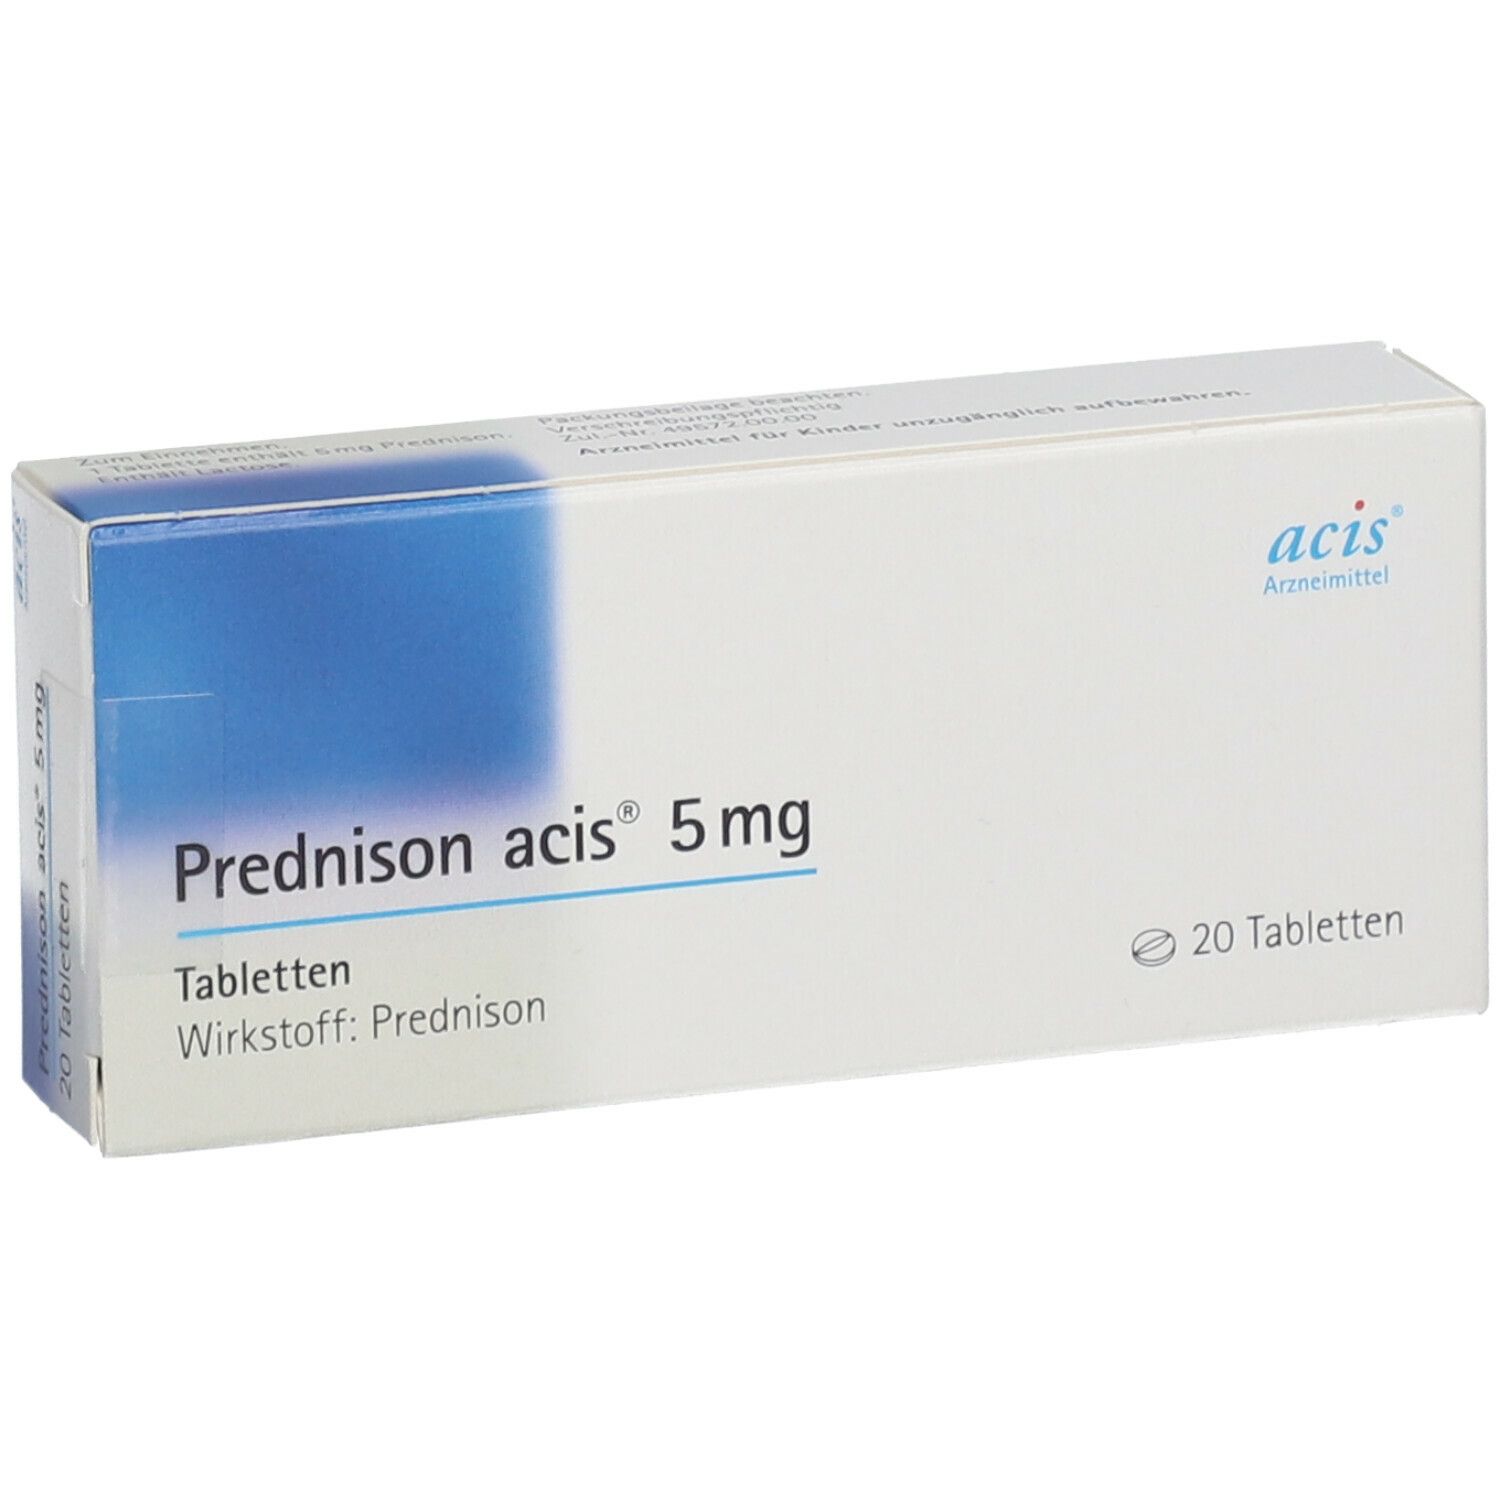 Prednison acis® 5Mg